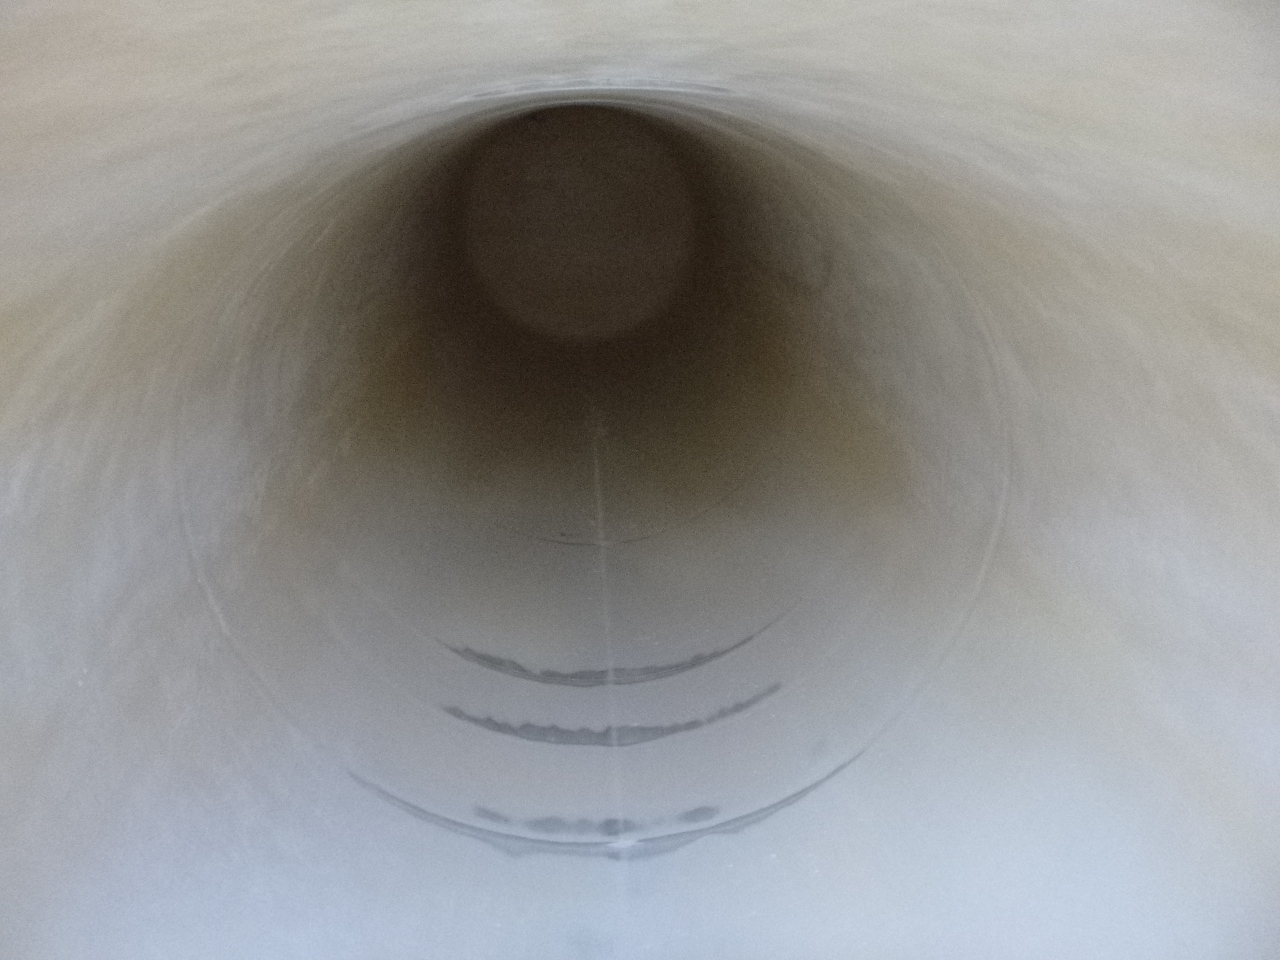 Poluprikolica cisterna za prijevoz brašna Feldbinder Powder tank alu 60 m3 (tipping): slika Poluprikolica cisterna za prijevoz brašna Feldbinder Powder tank alu 60 m3 (tipping)